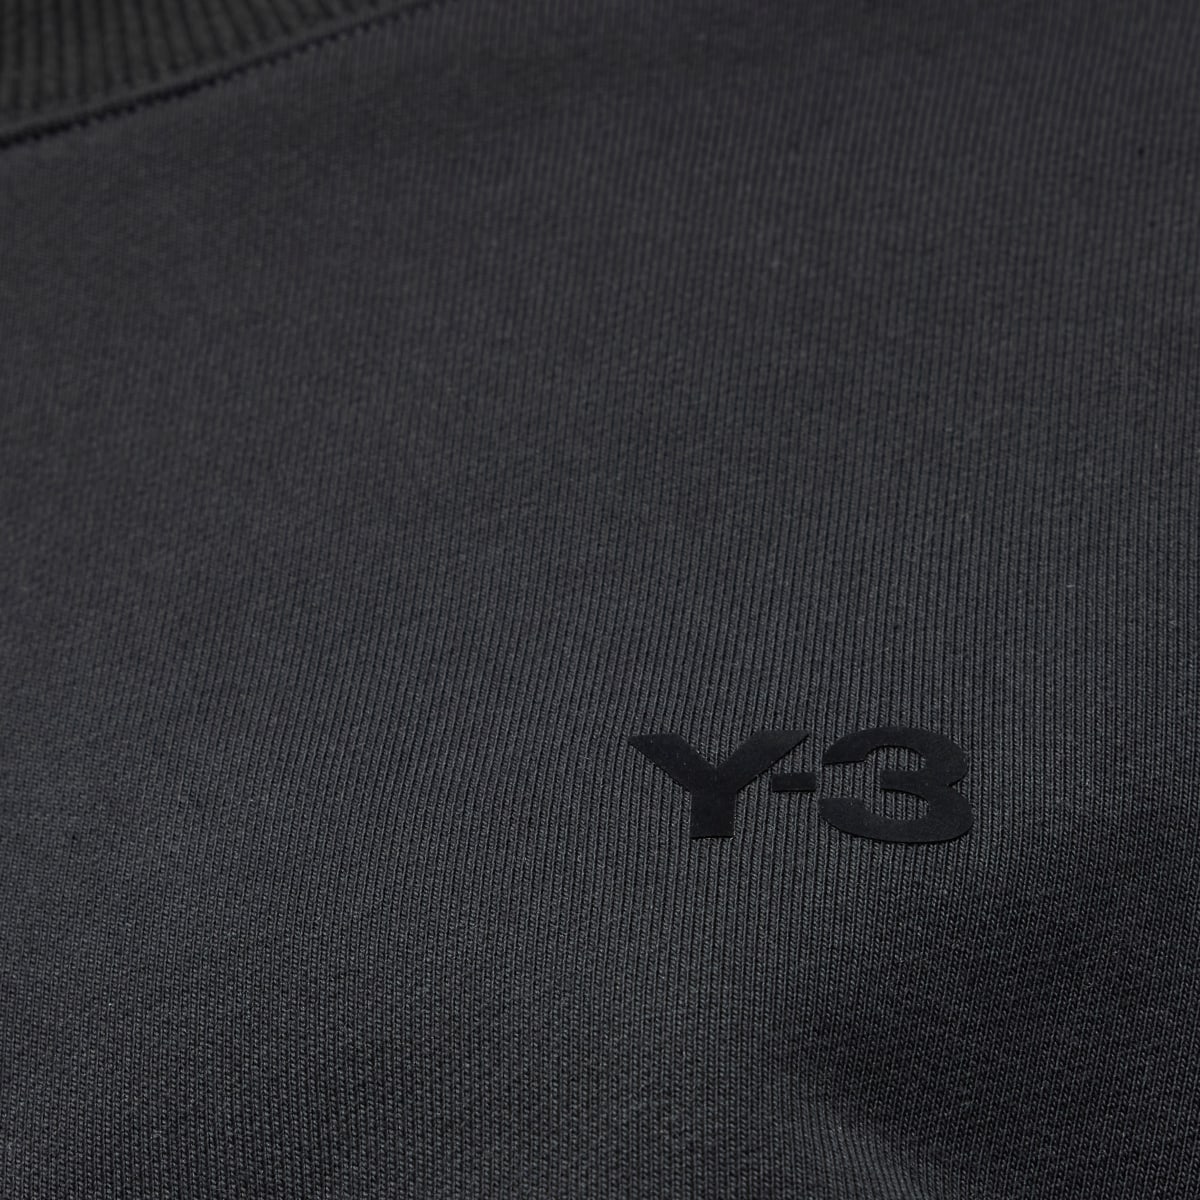 Adidas Y-3 French Terry Boxy Crew Sweatshirt. 6